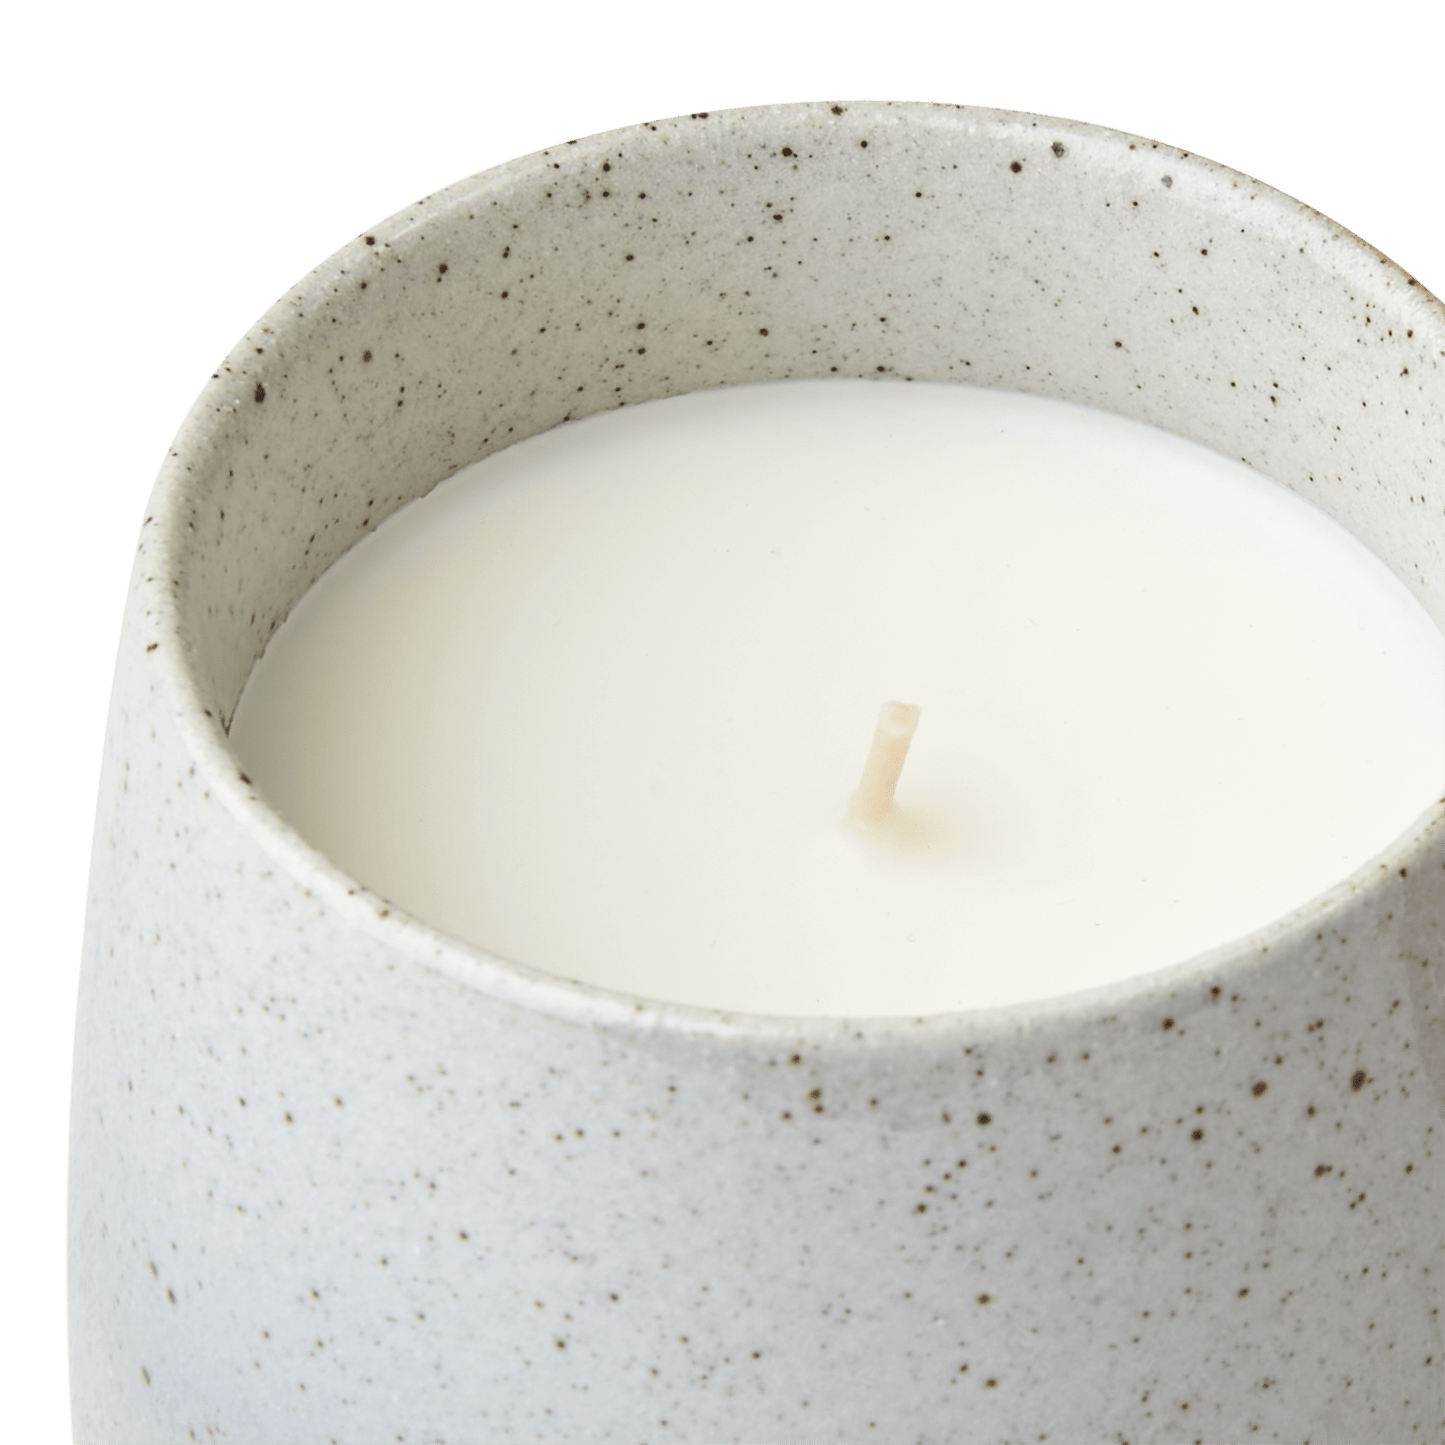 Ro er duftlyset fra Affari som fyller hjemmet ditt med en herlig duft og stemning. Laget av soyavoks og tappet i en keramikk krukke som kan gjenbrukes når lyset er brent ned.